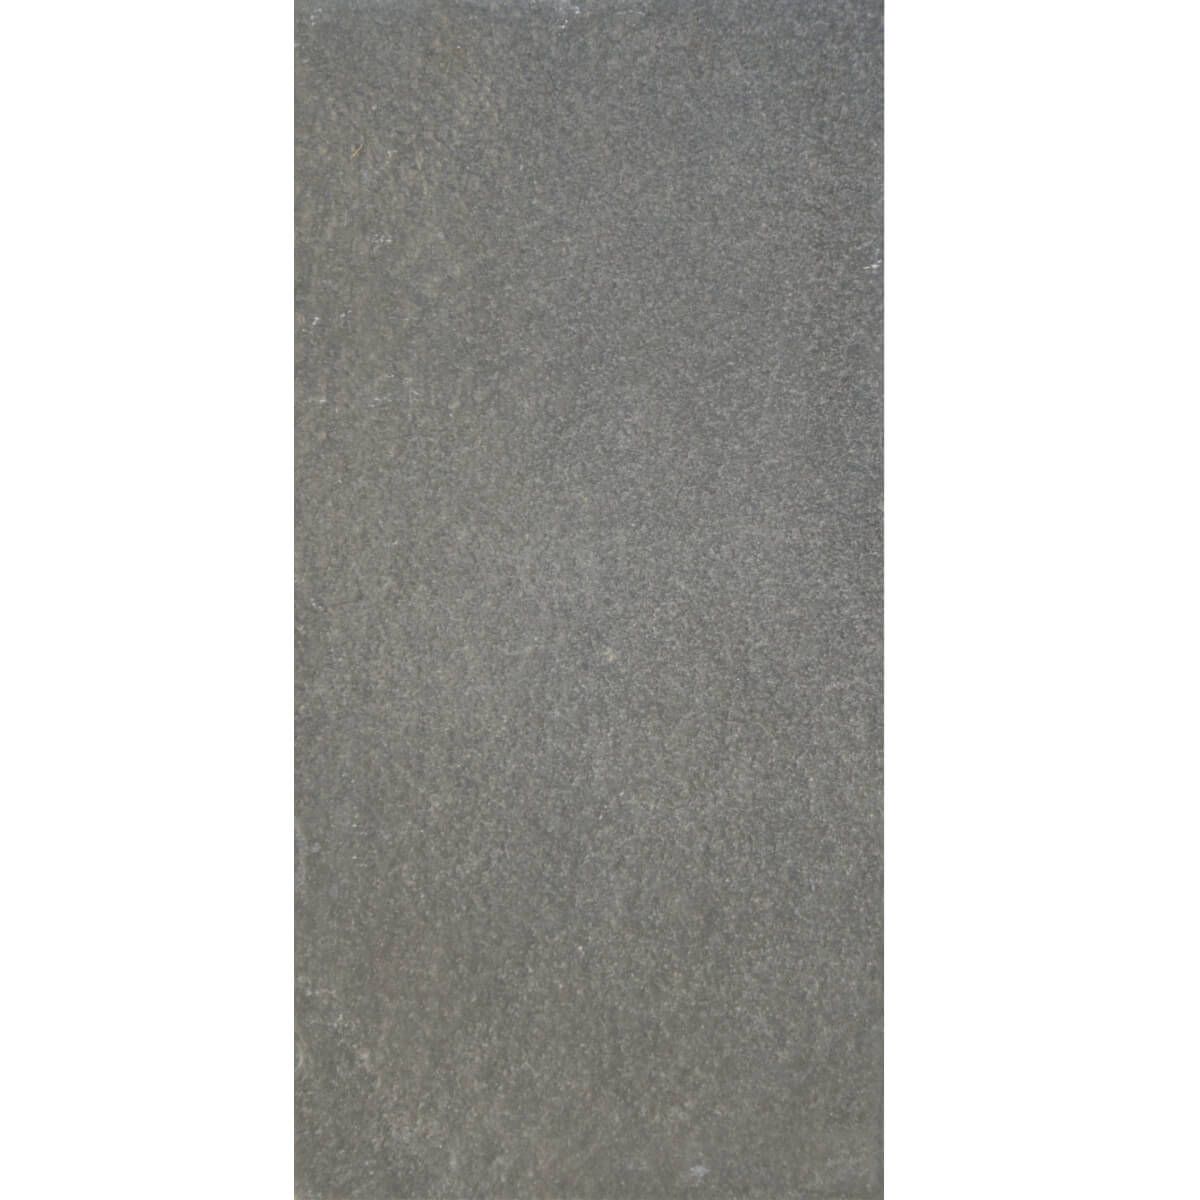 Płytki wapień Chittor Black szczotkowany 30x15x1 cm